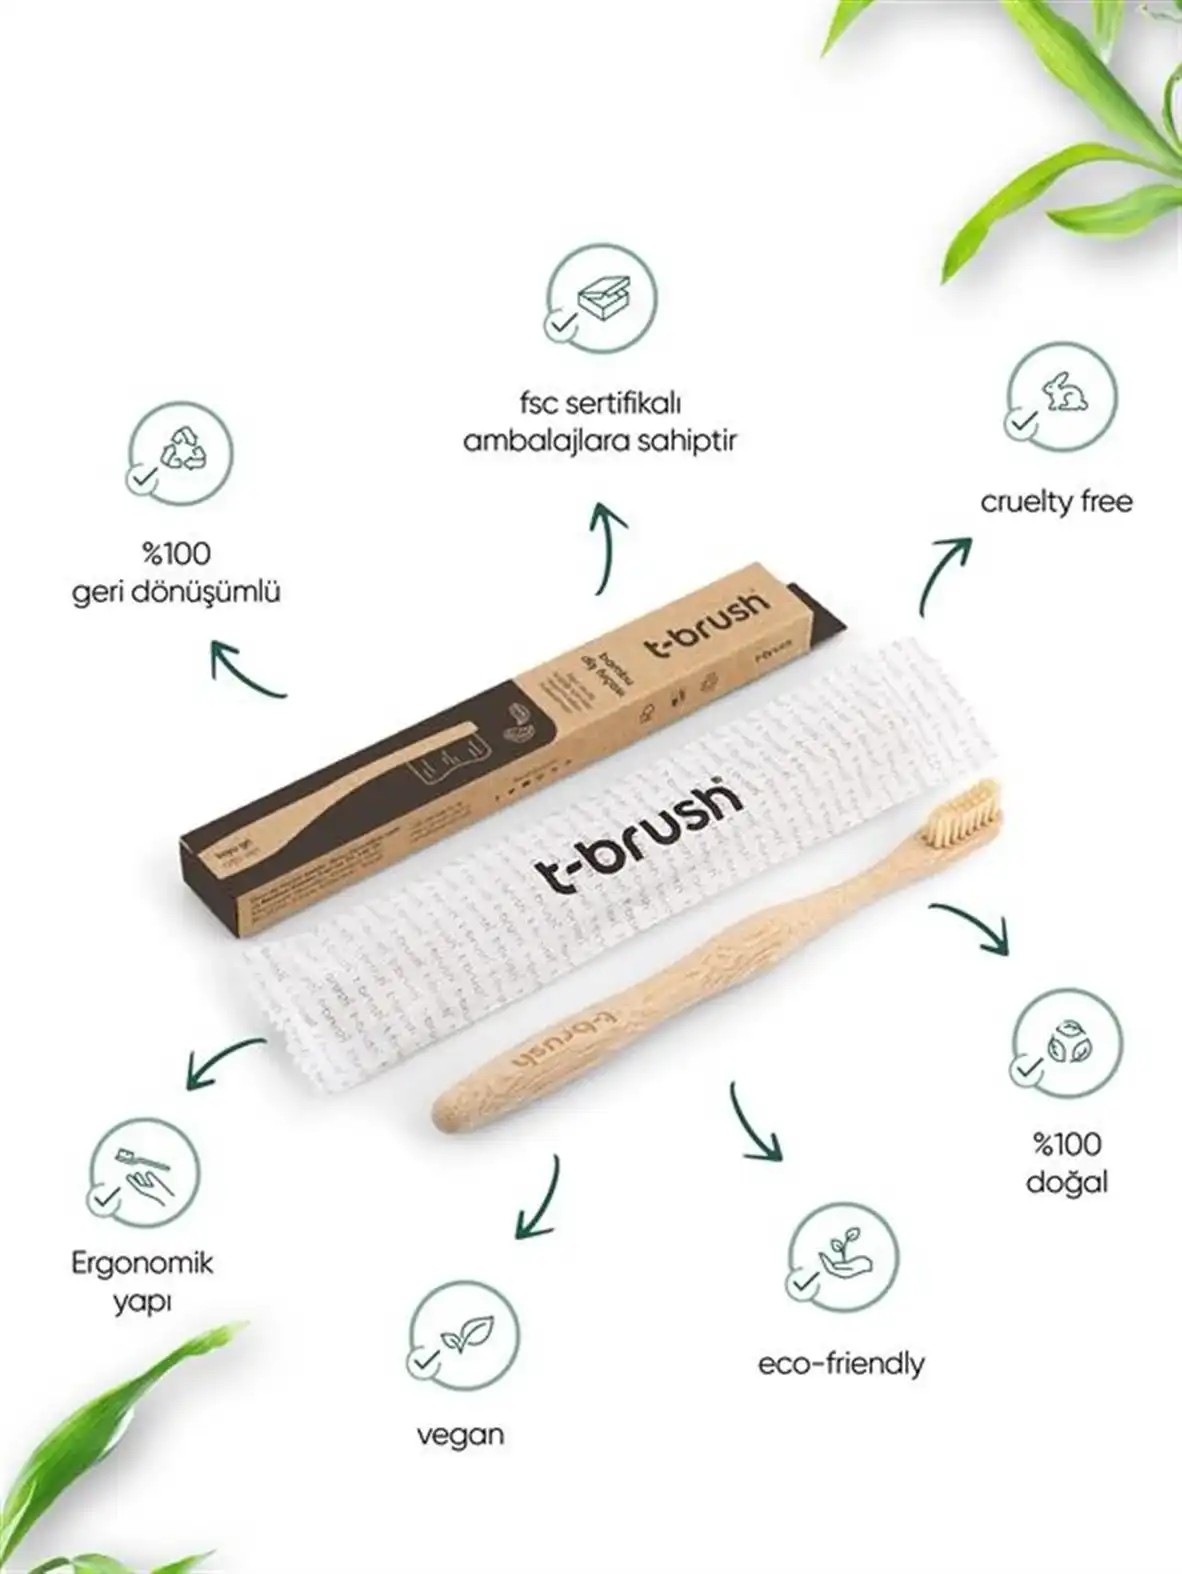 T-Brush Bambu Diş Fırçası - Krem Renk